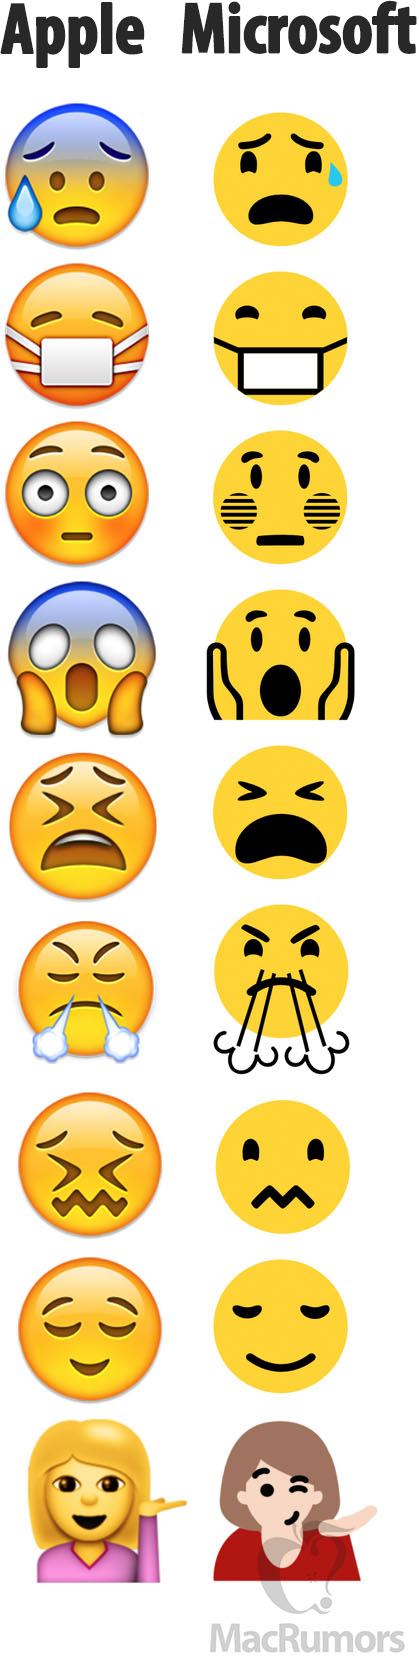 Apple-vs-Microsoft-Emojis